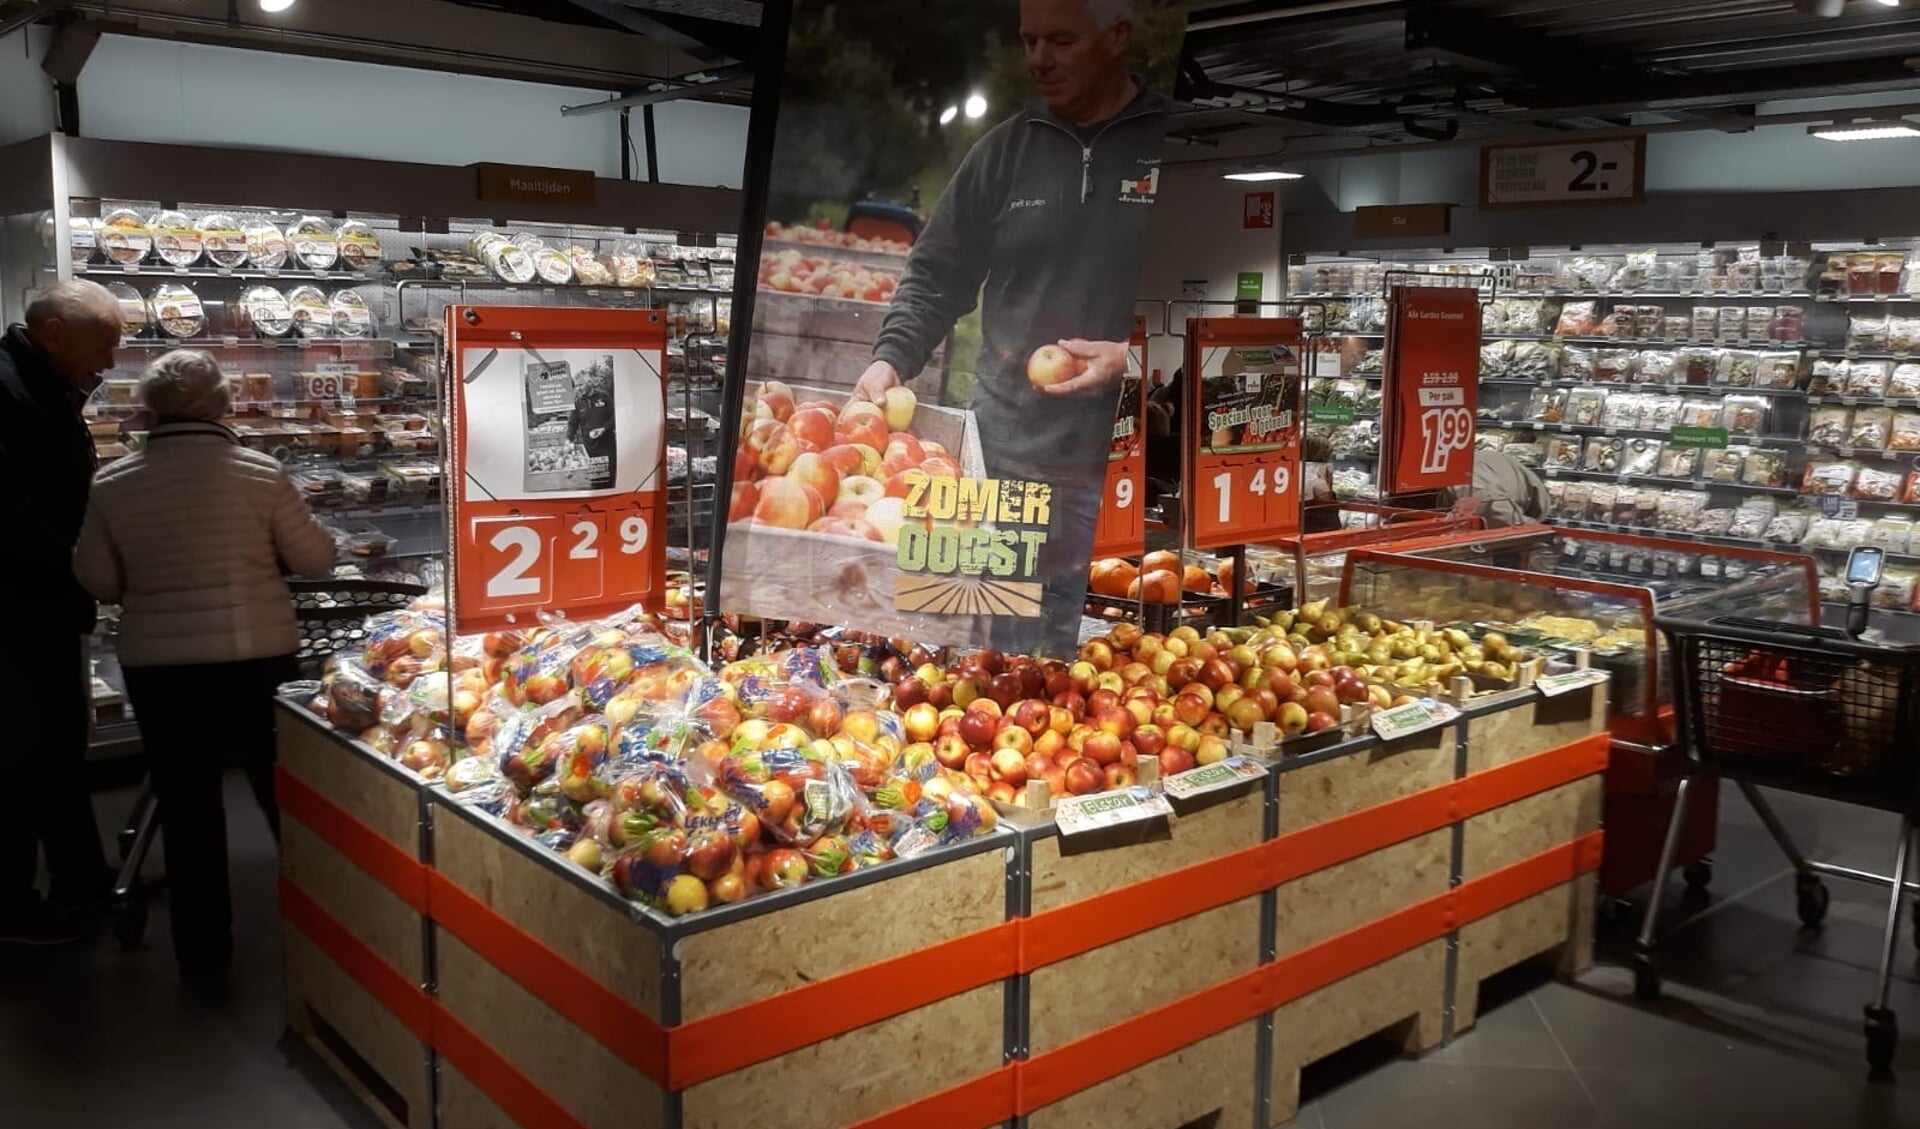 Zomerse oogst familiefruit bij PLUS-supermarkten en Stevens groente, fruit & streekproducten in Sambeek.